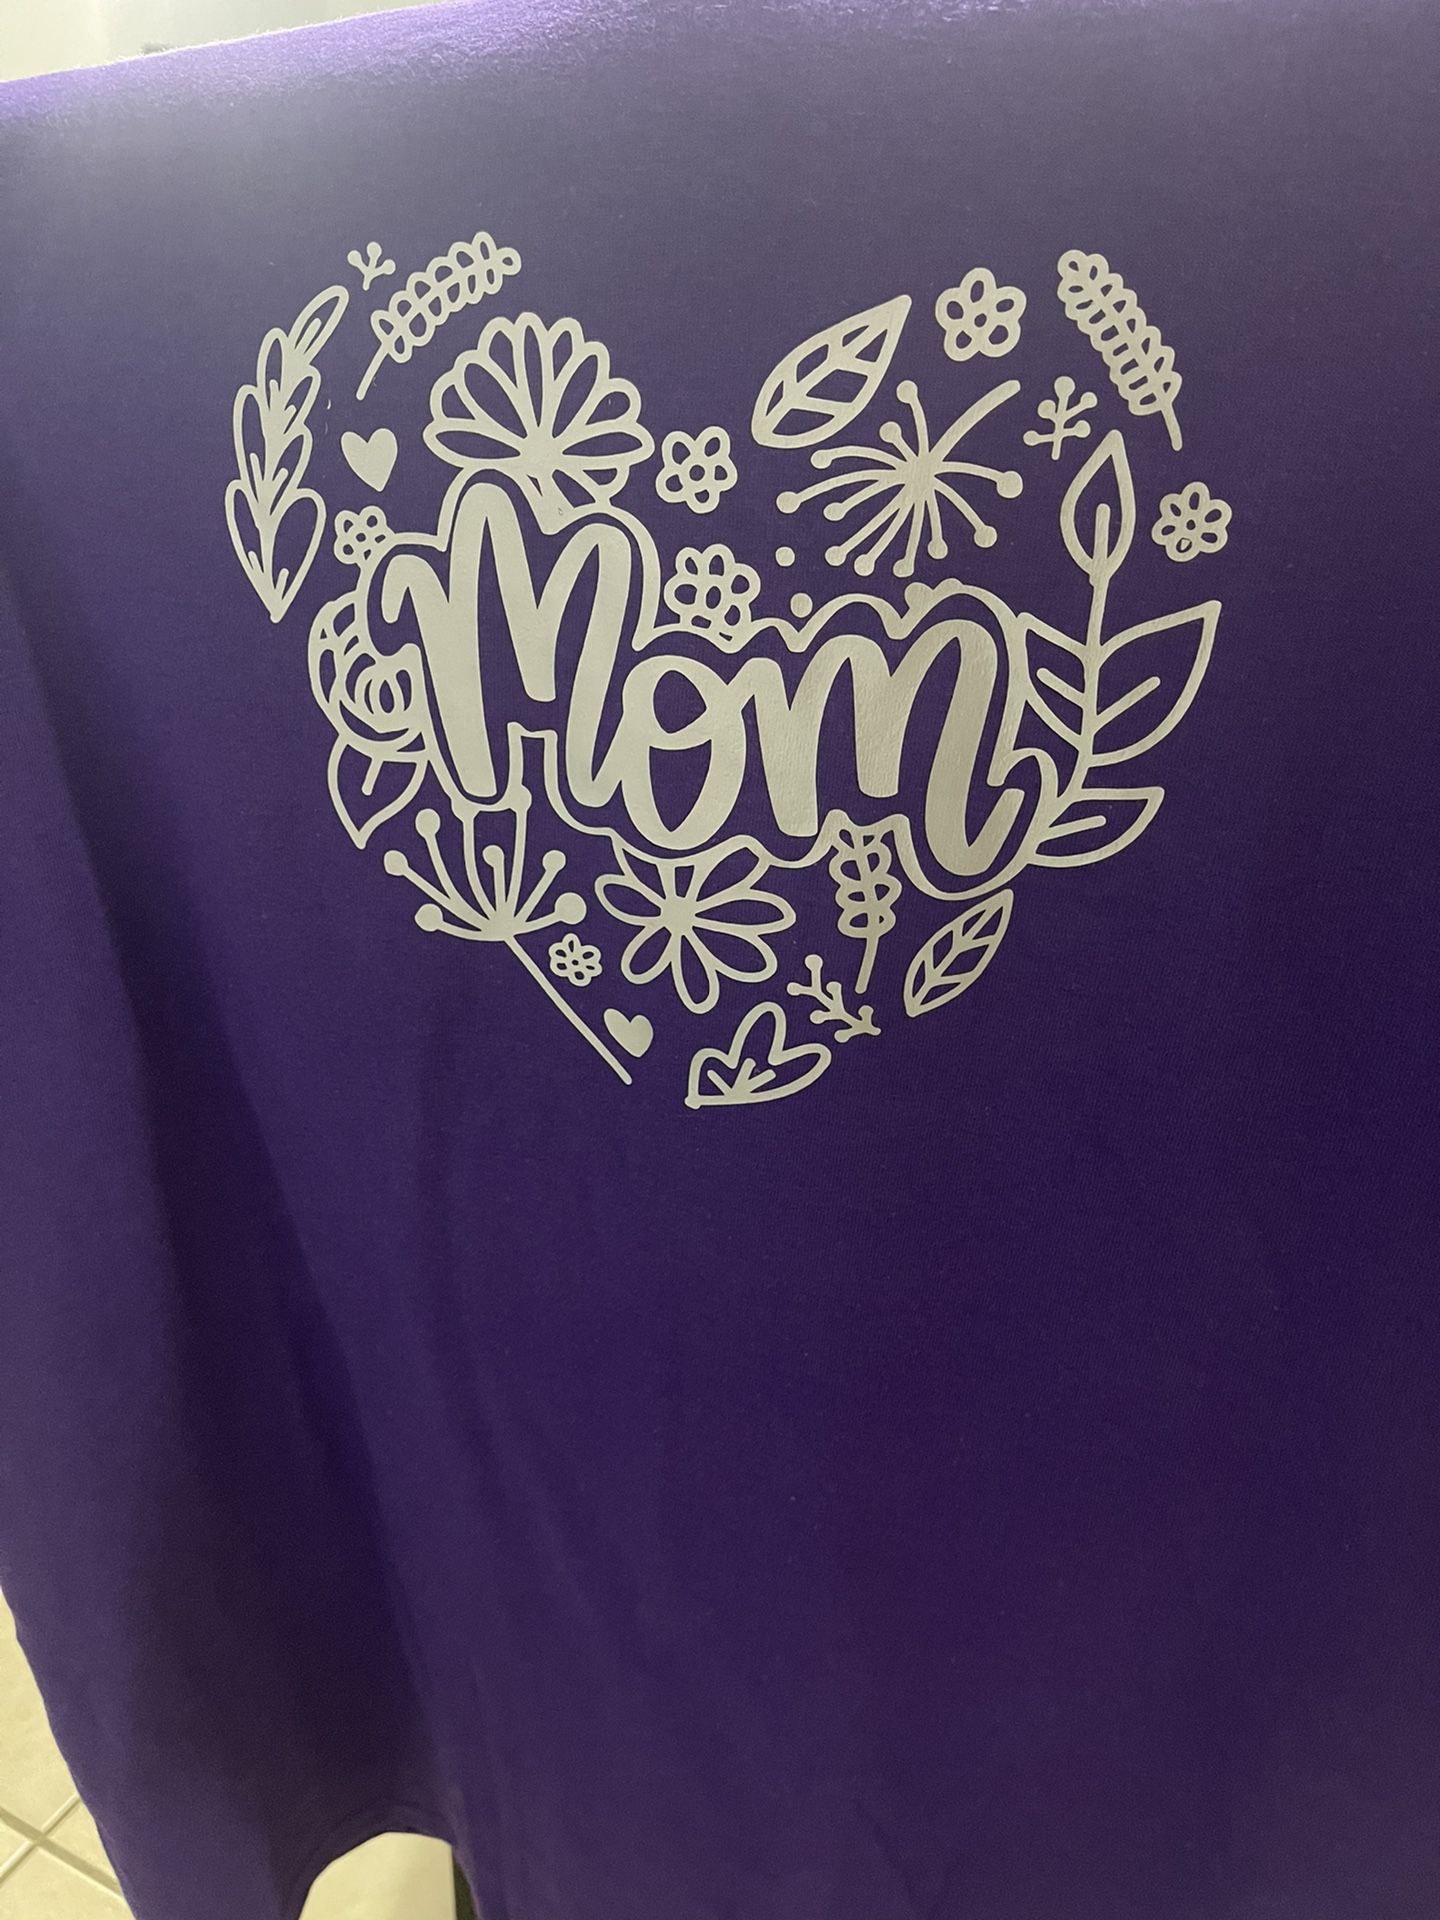 Customized Mothers Day Mugs & T Shirts